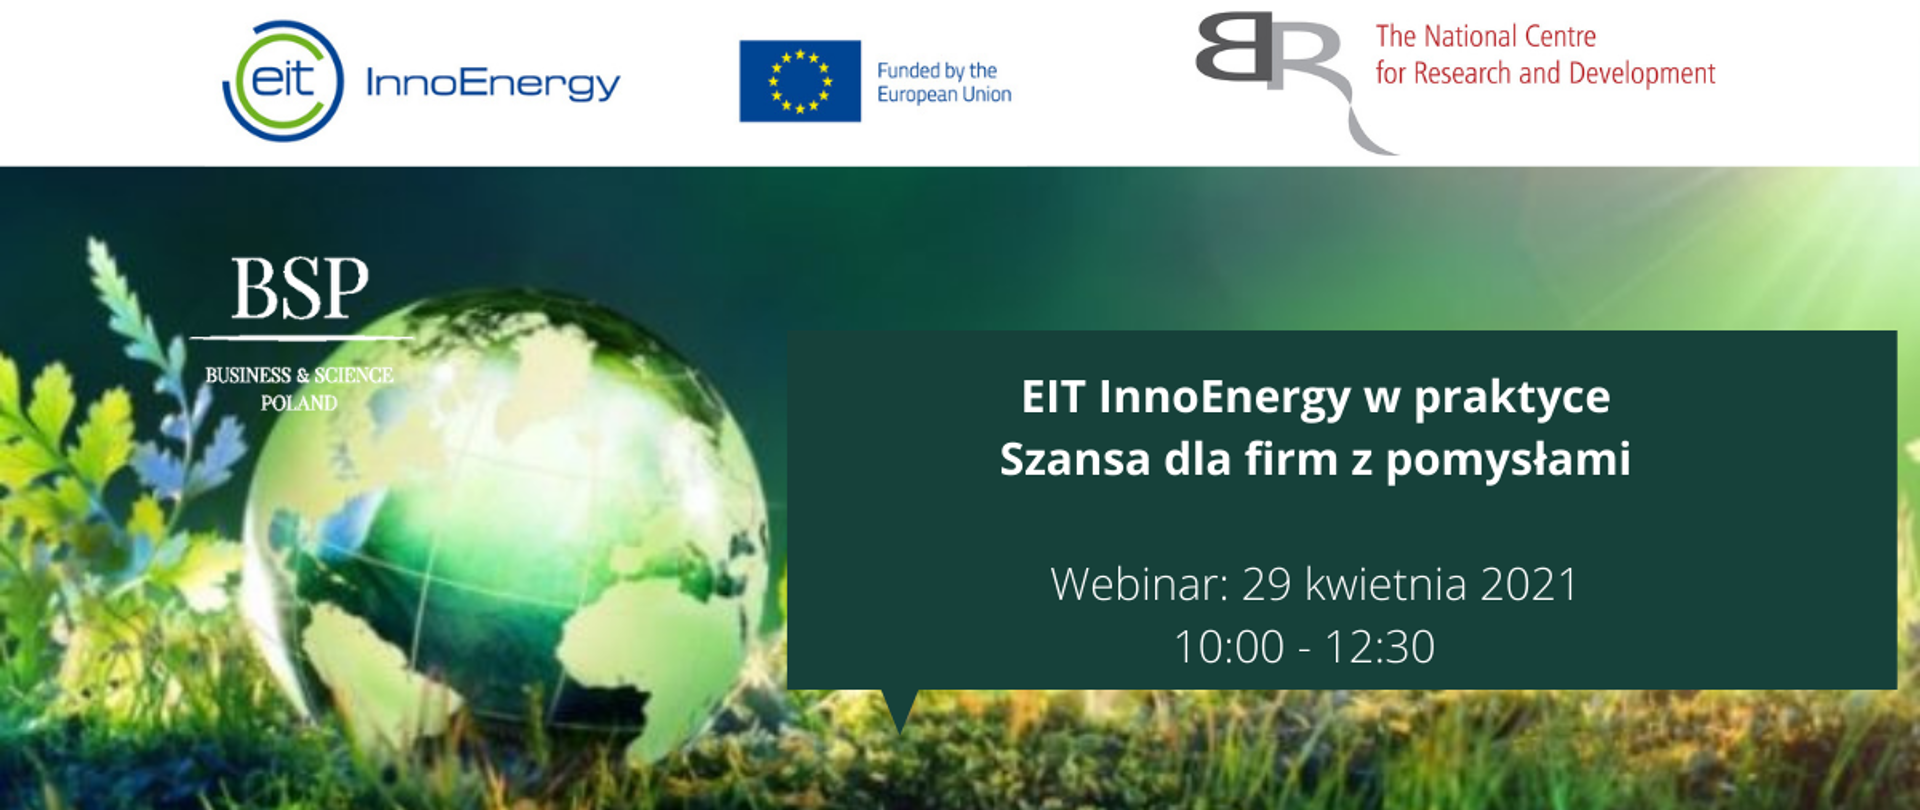 EIT InnoEnergy w praktyce Szansa dla firm z pomysłami